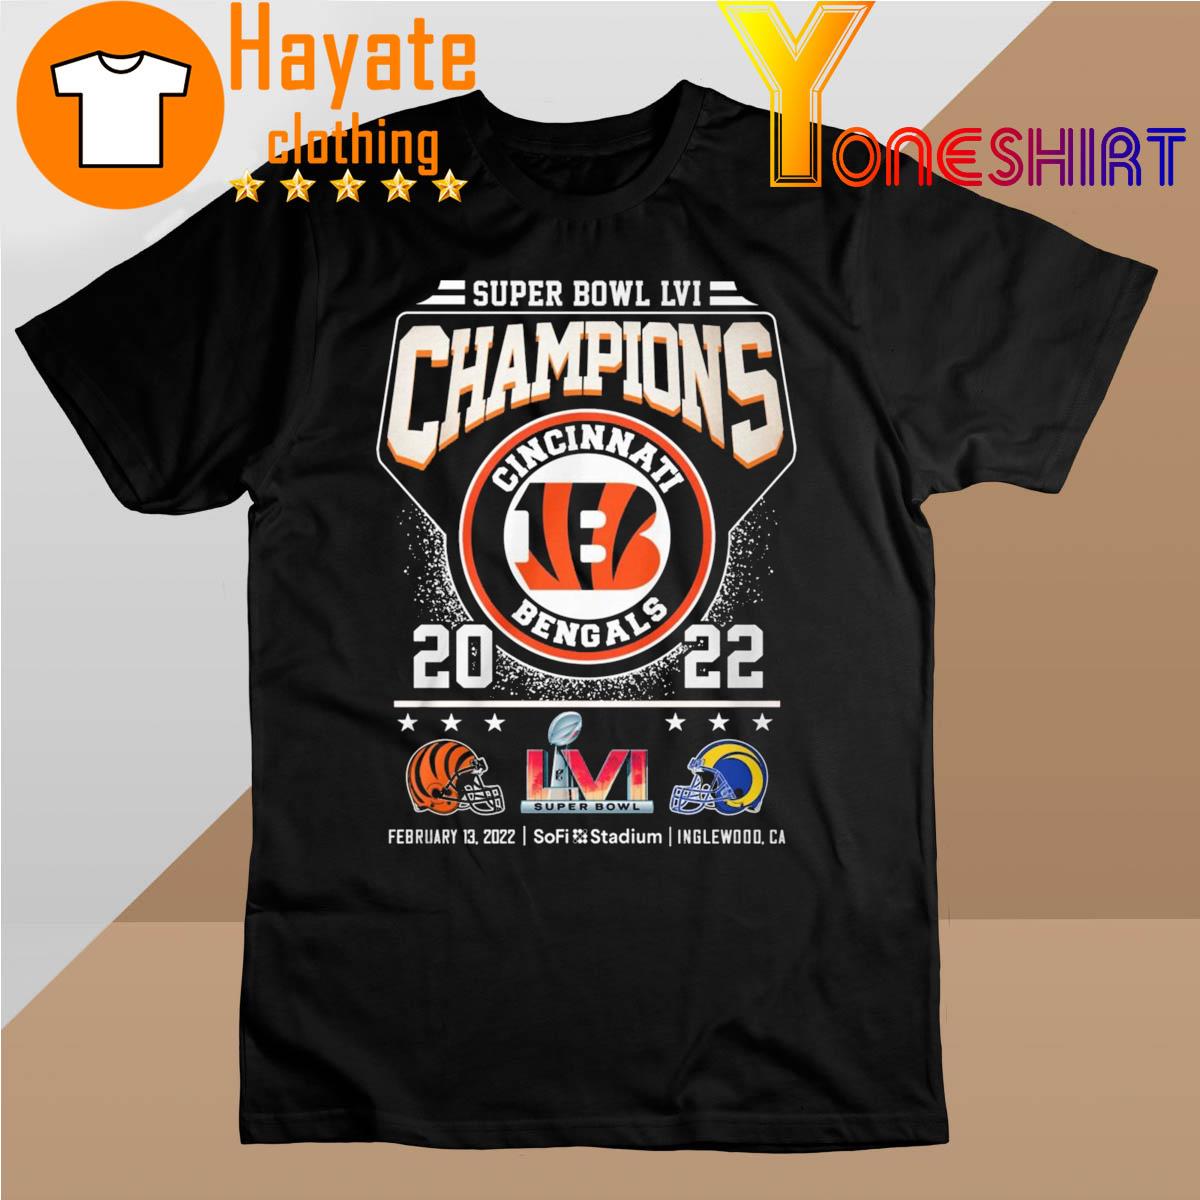 Super Bowl LVI Champions Cincinnati Bengals vs Los Angeles Rams 2022 shirt